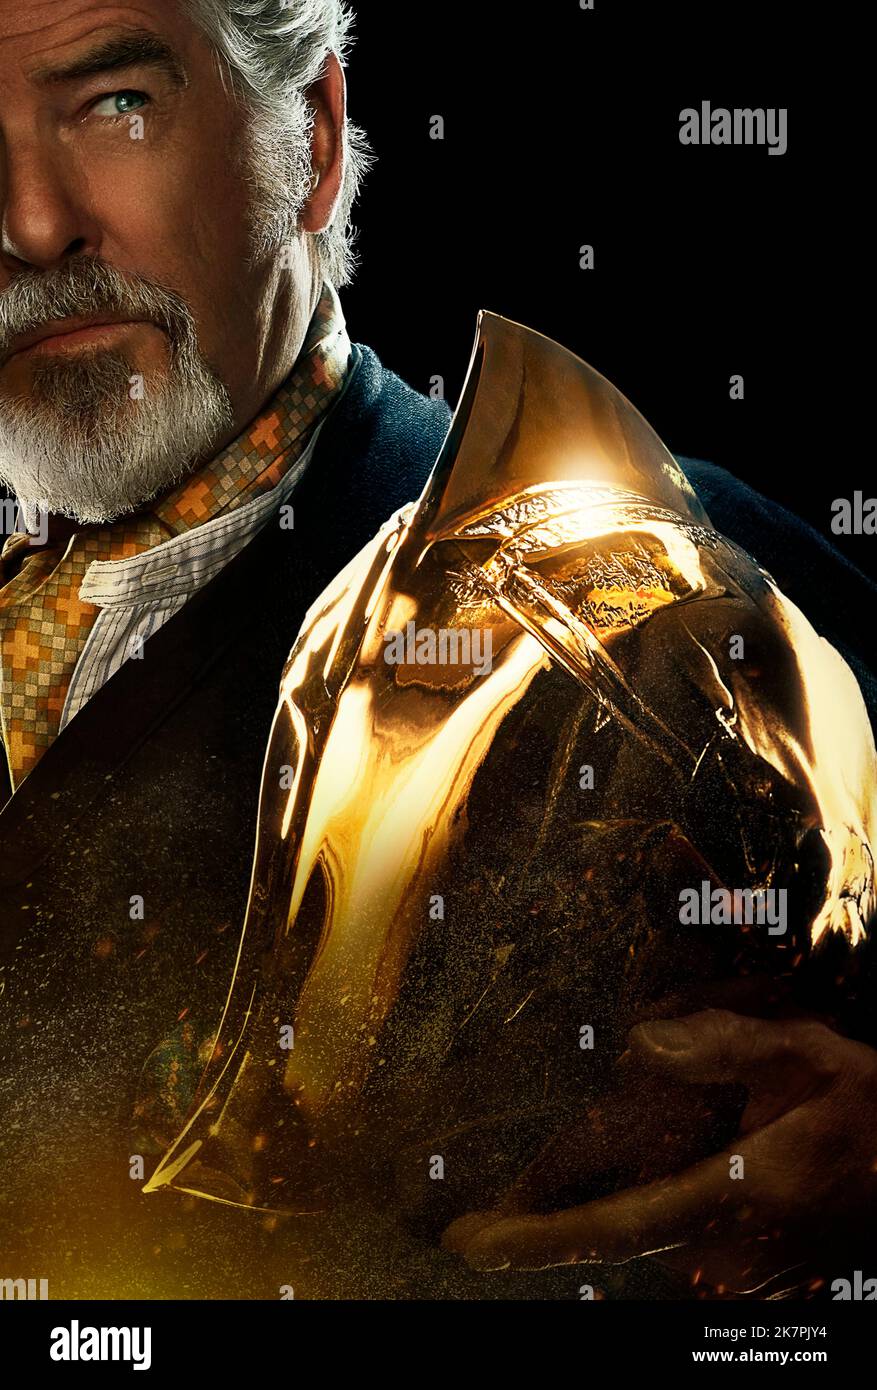 Pierce Brosnan se suma al elenco de la película “Black Adam